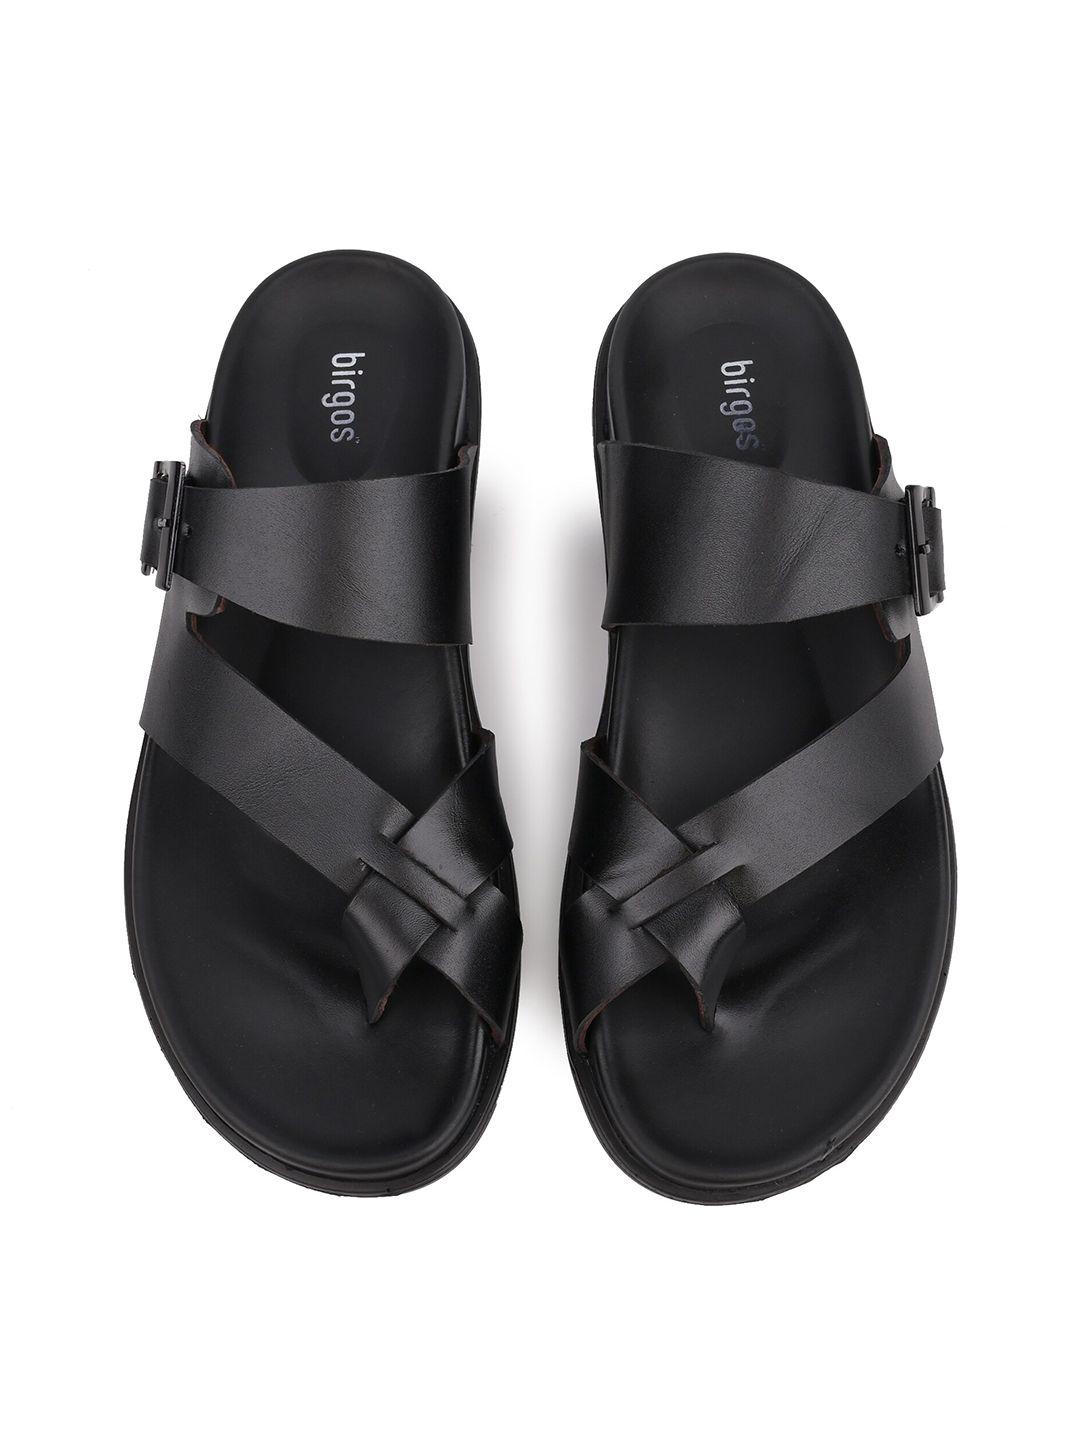 birgos men leather buckle comfort sandals